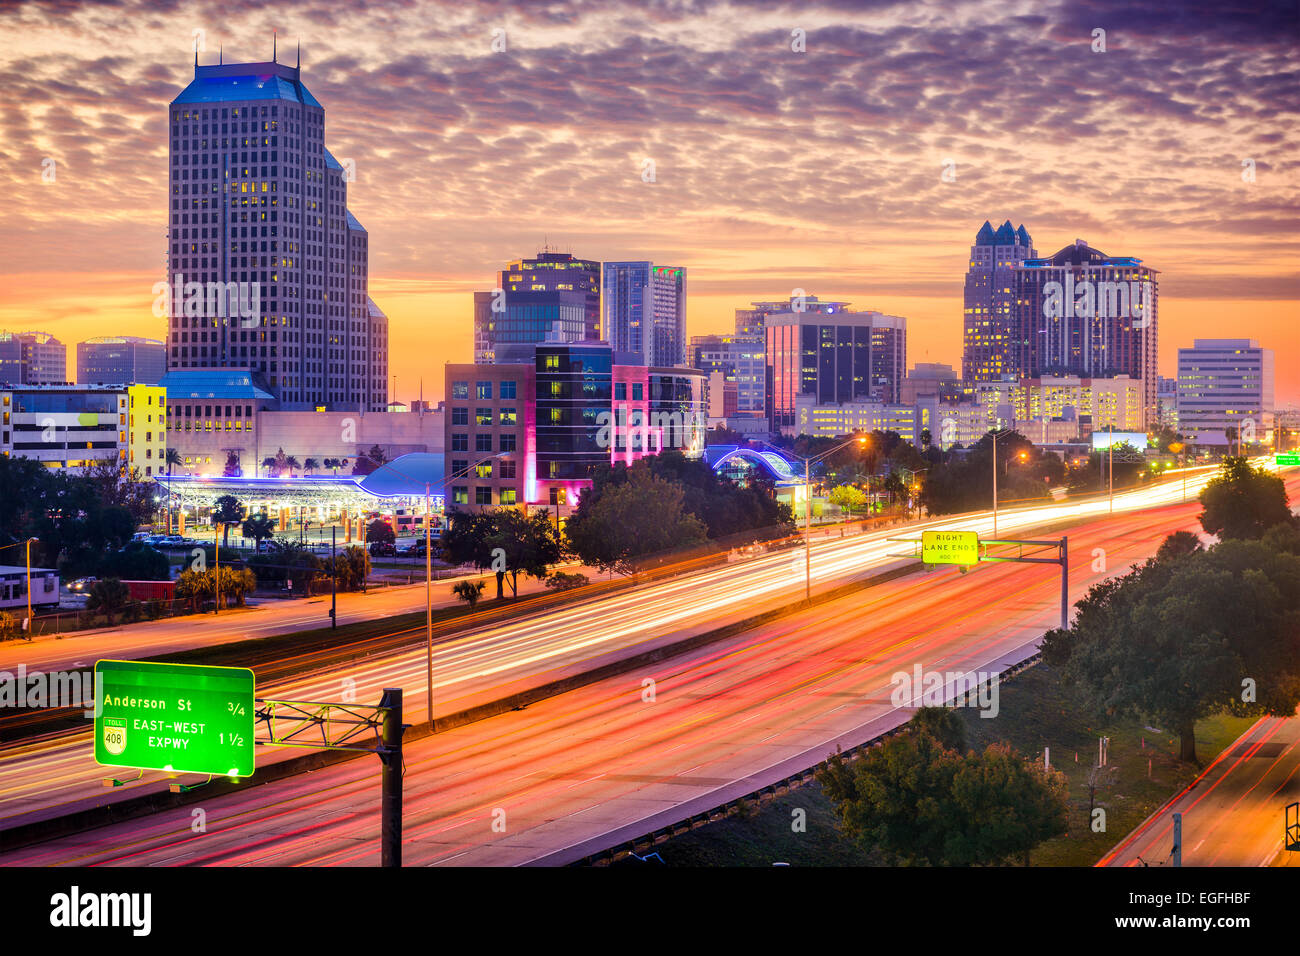 Orlando, Florida, USA cityscape. Stock Photo